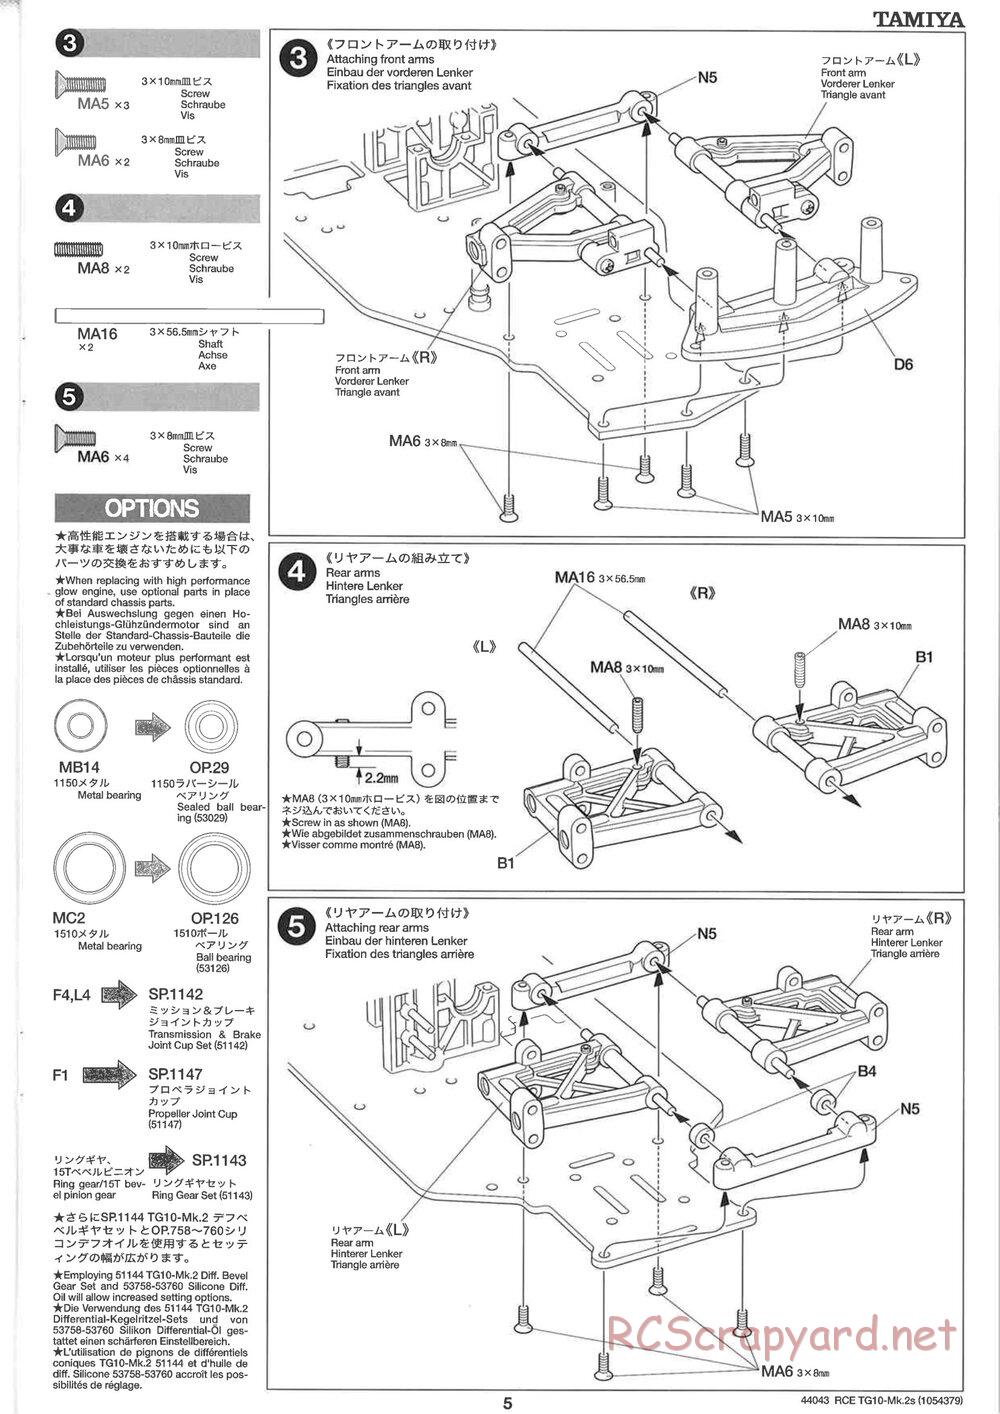 Tamiya - TG10 Mk.2s Chassis - Manual - Page 6